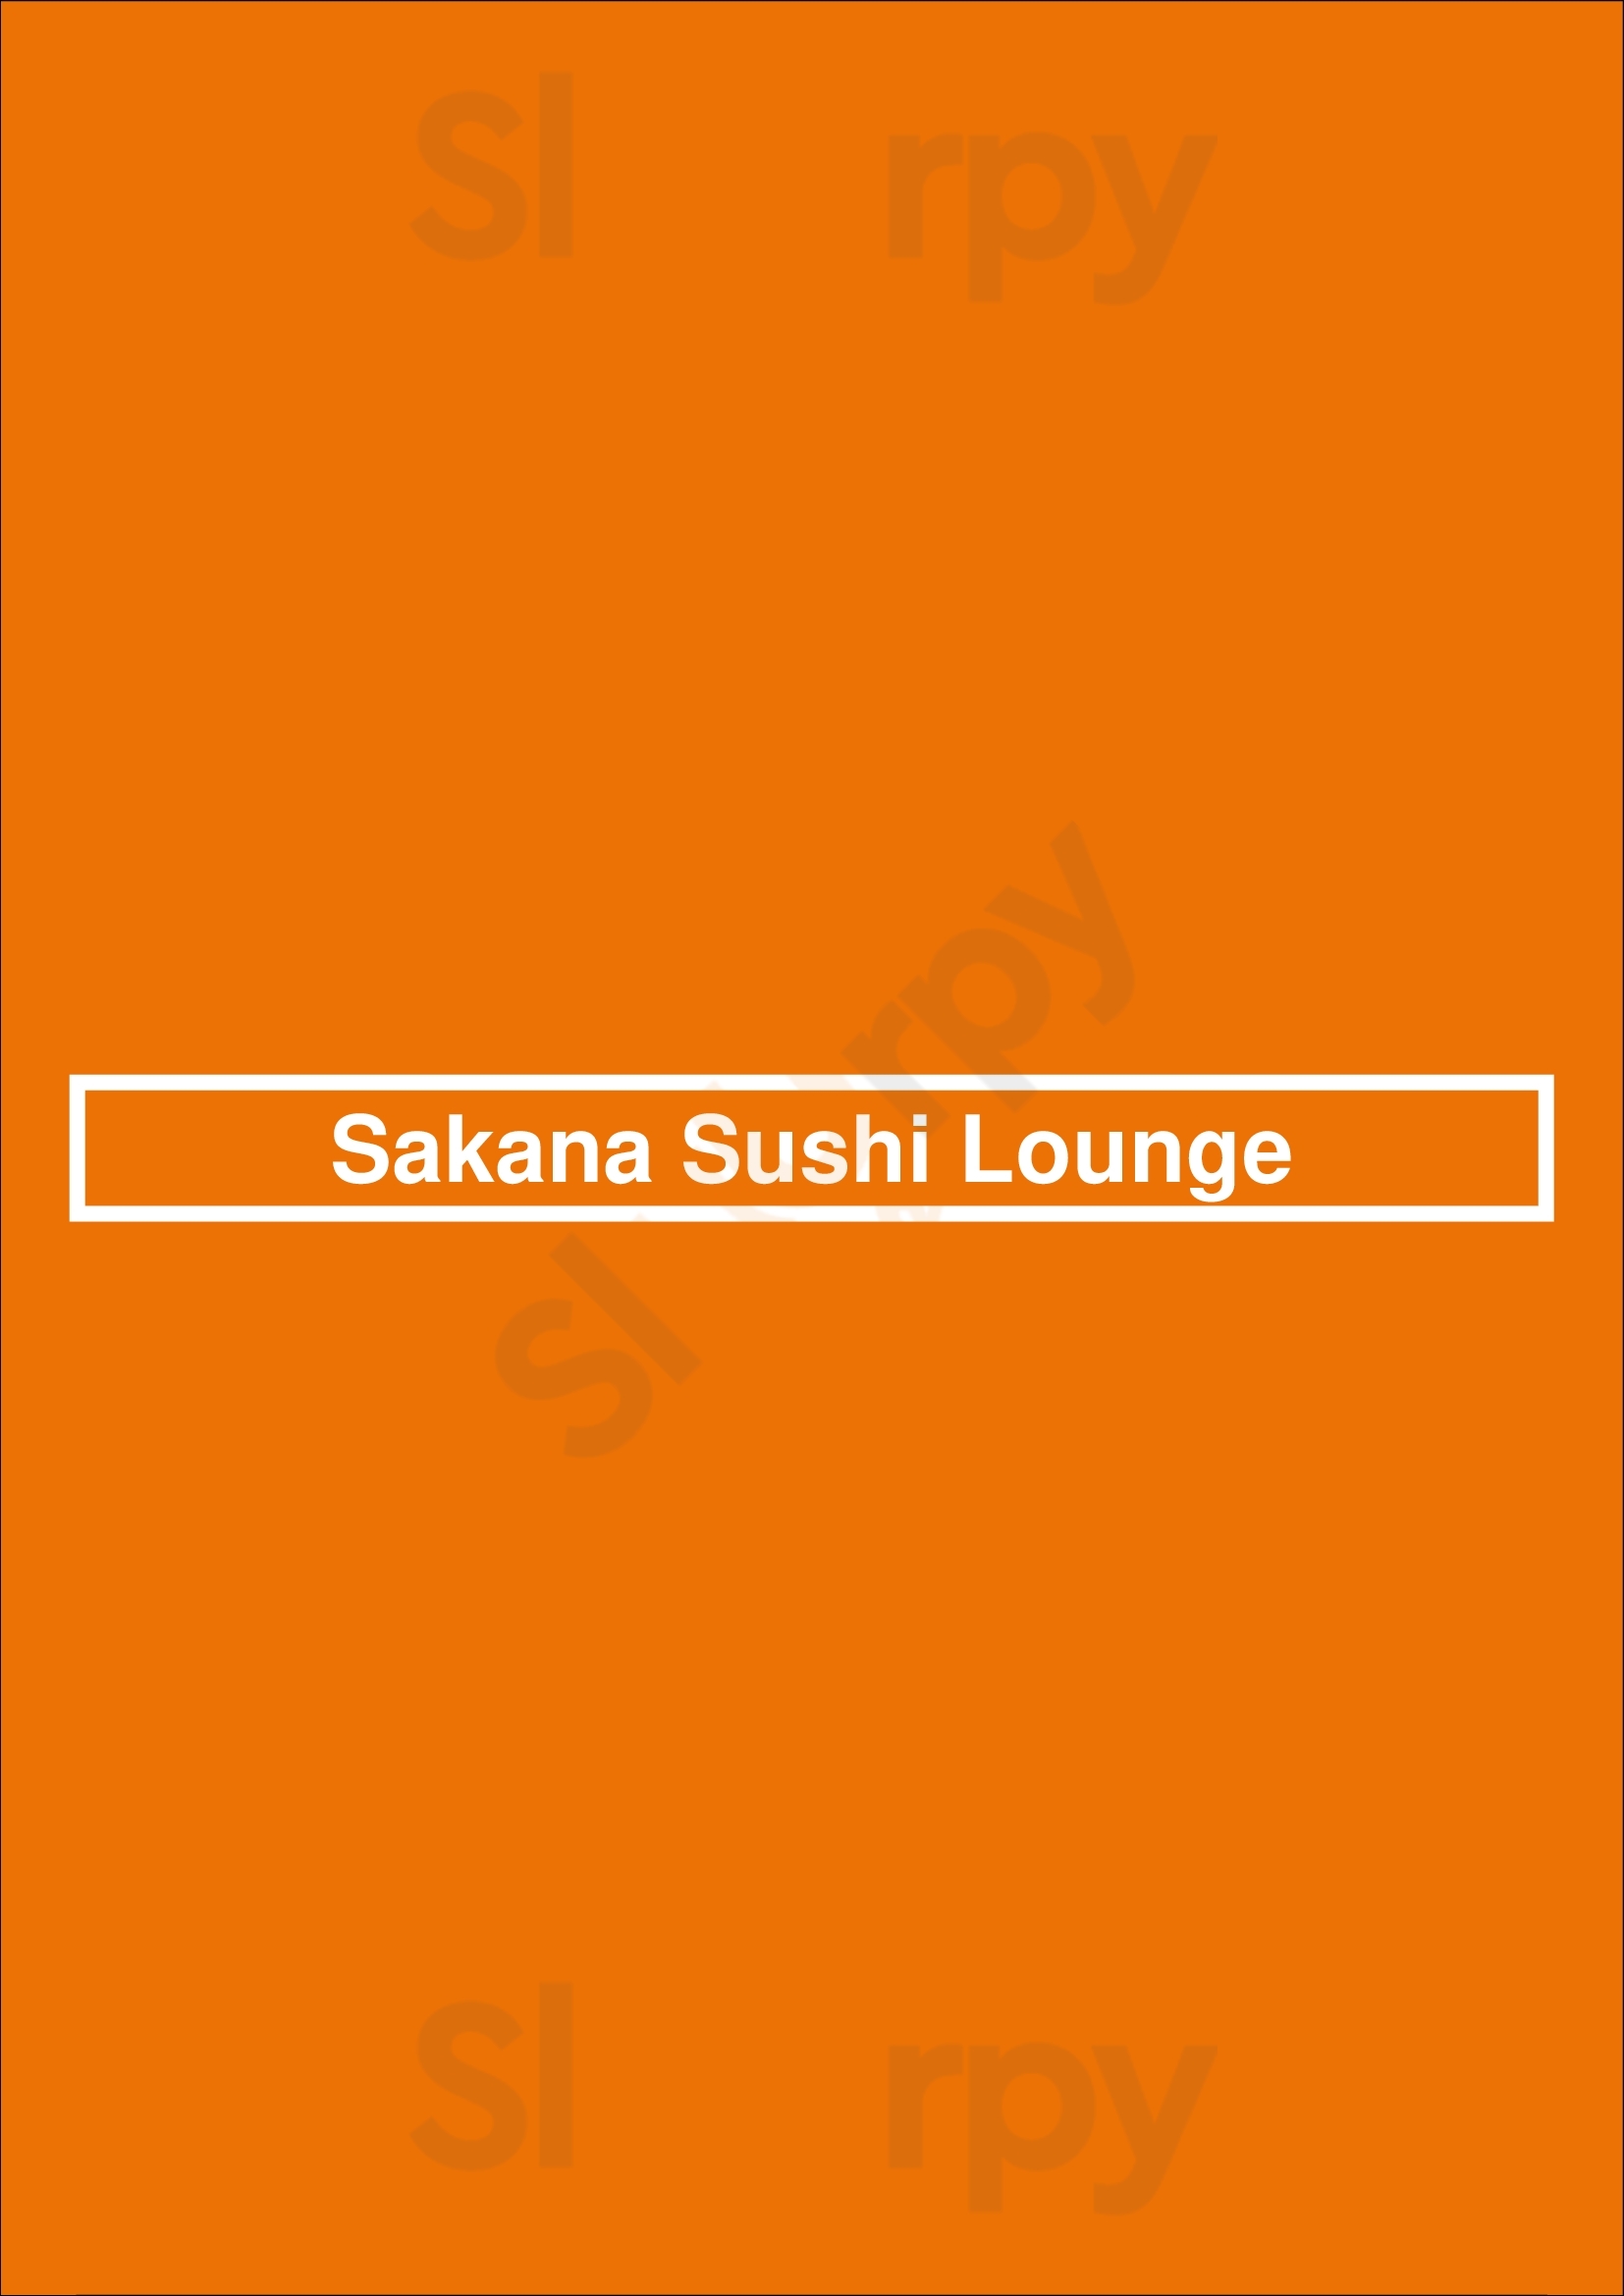 Sakana Sushi Lounge Los Angeles Menu - 1